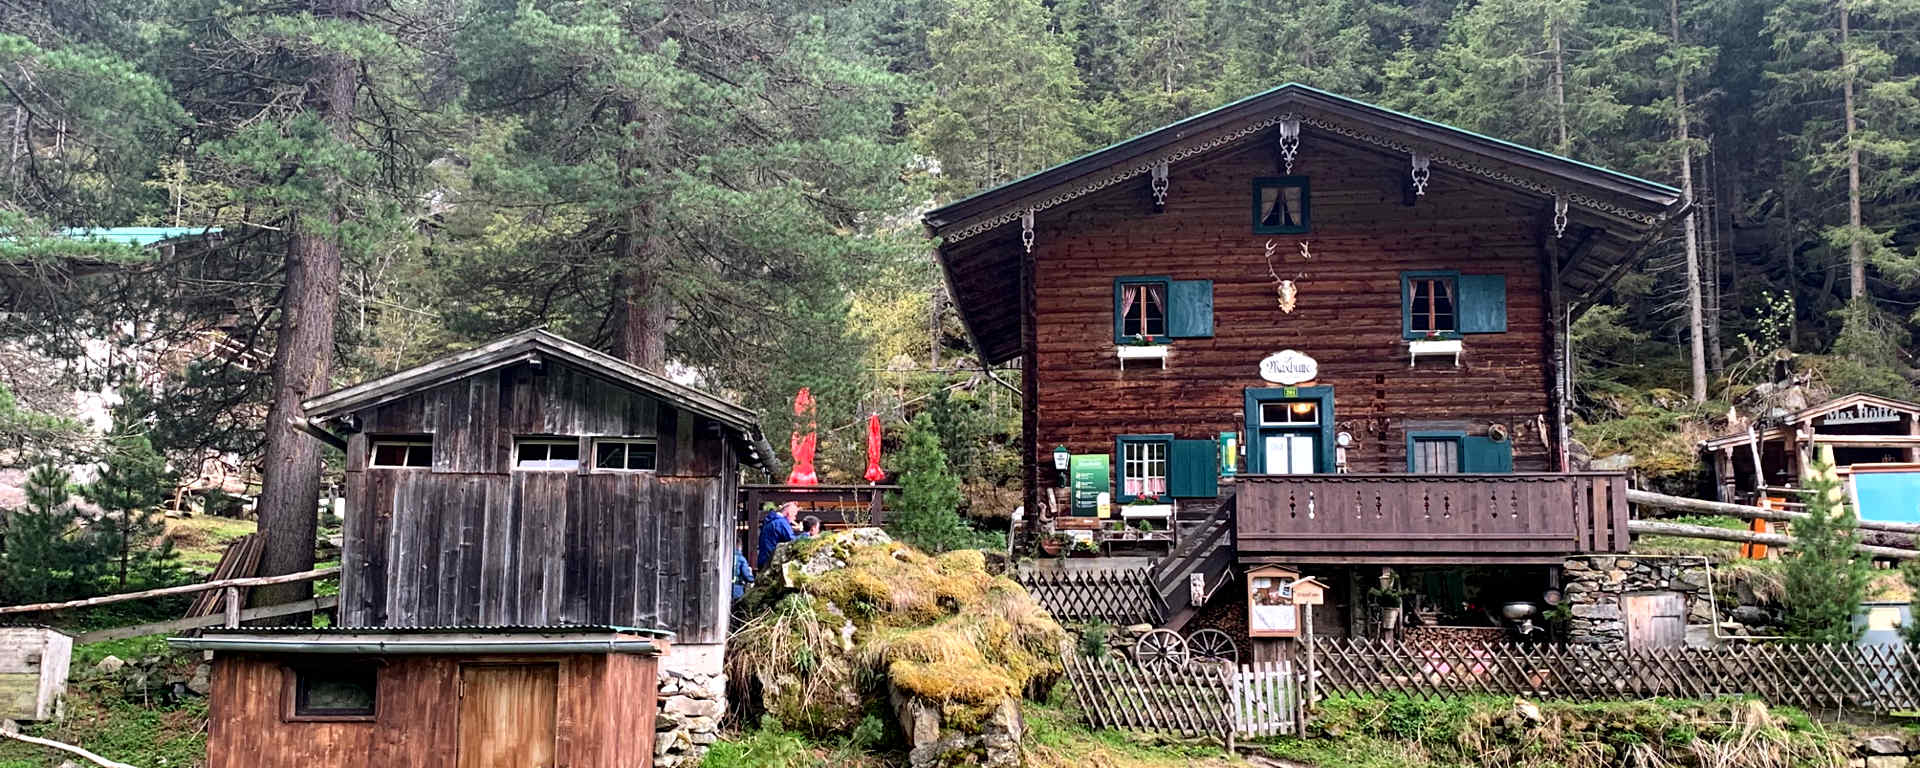 Maxhütte in der Gunggl im Zillertal